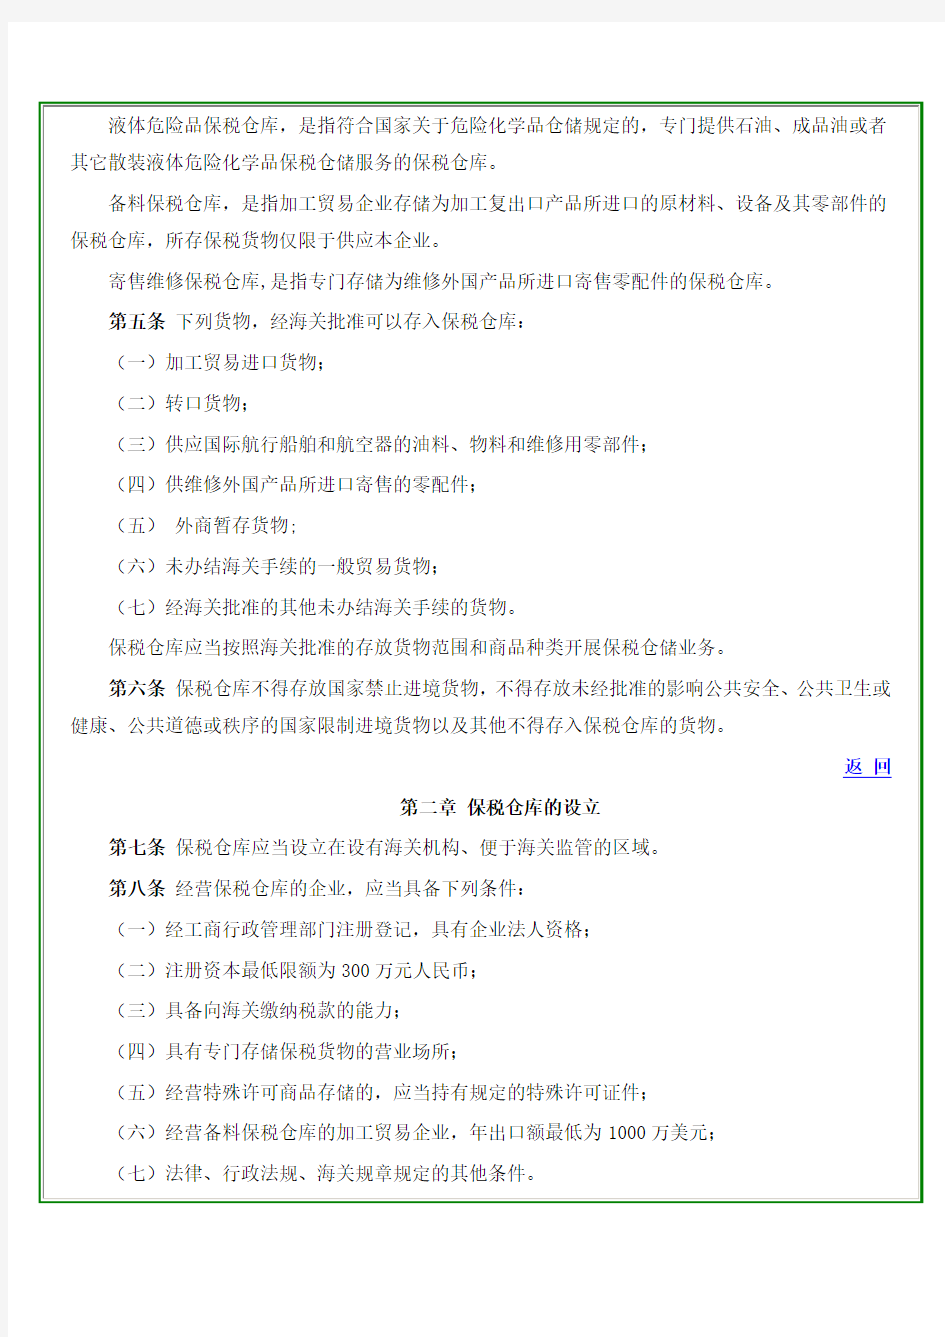 中华人民共和国海关对保税仓库及所存货物的管理规定(105号令)